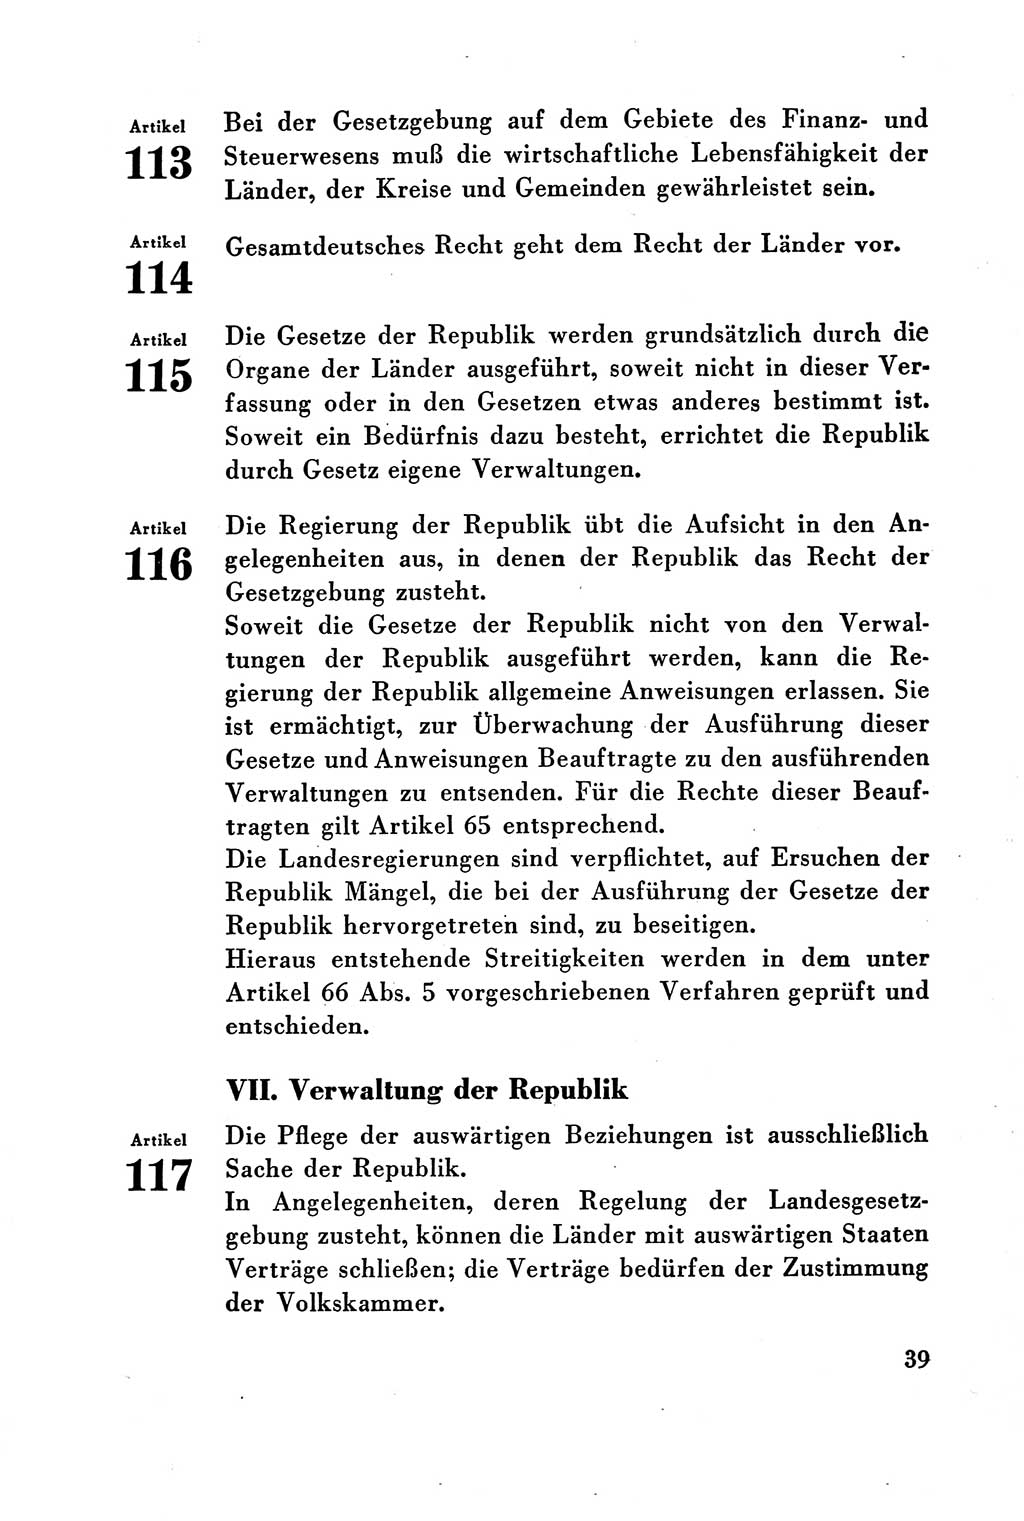 Verfassung der Deutschen Demokratischen Republik (DDR) vom 7. Oktober 1949, Seite 39 (Verf. DDR 1949, S. 39)